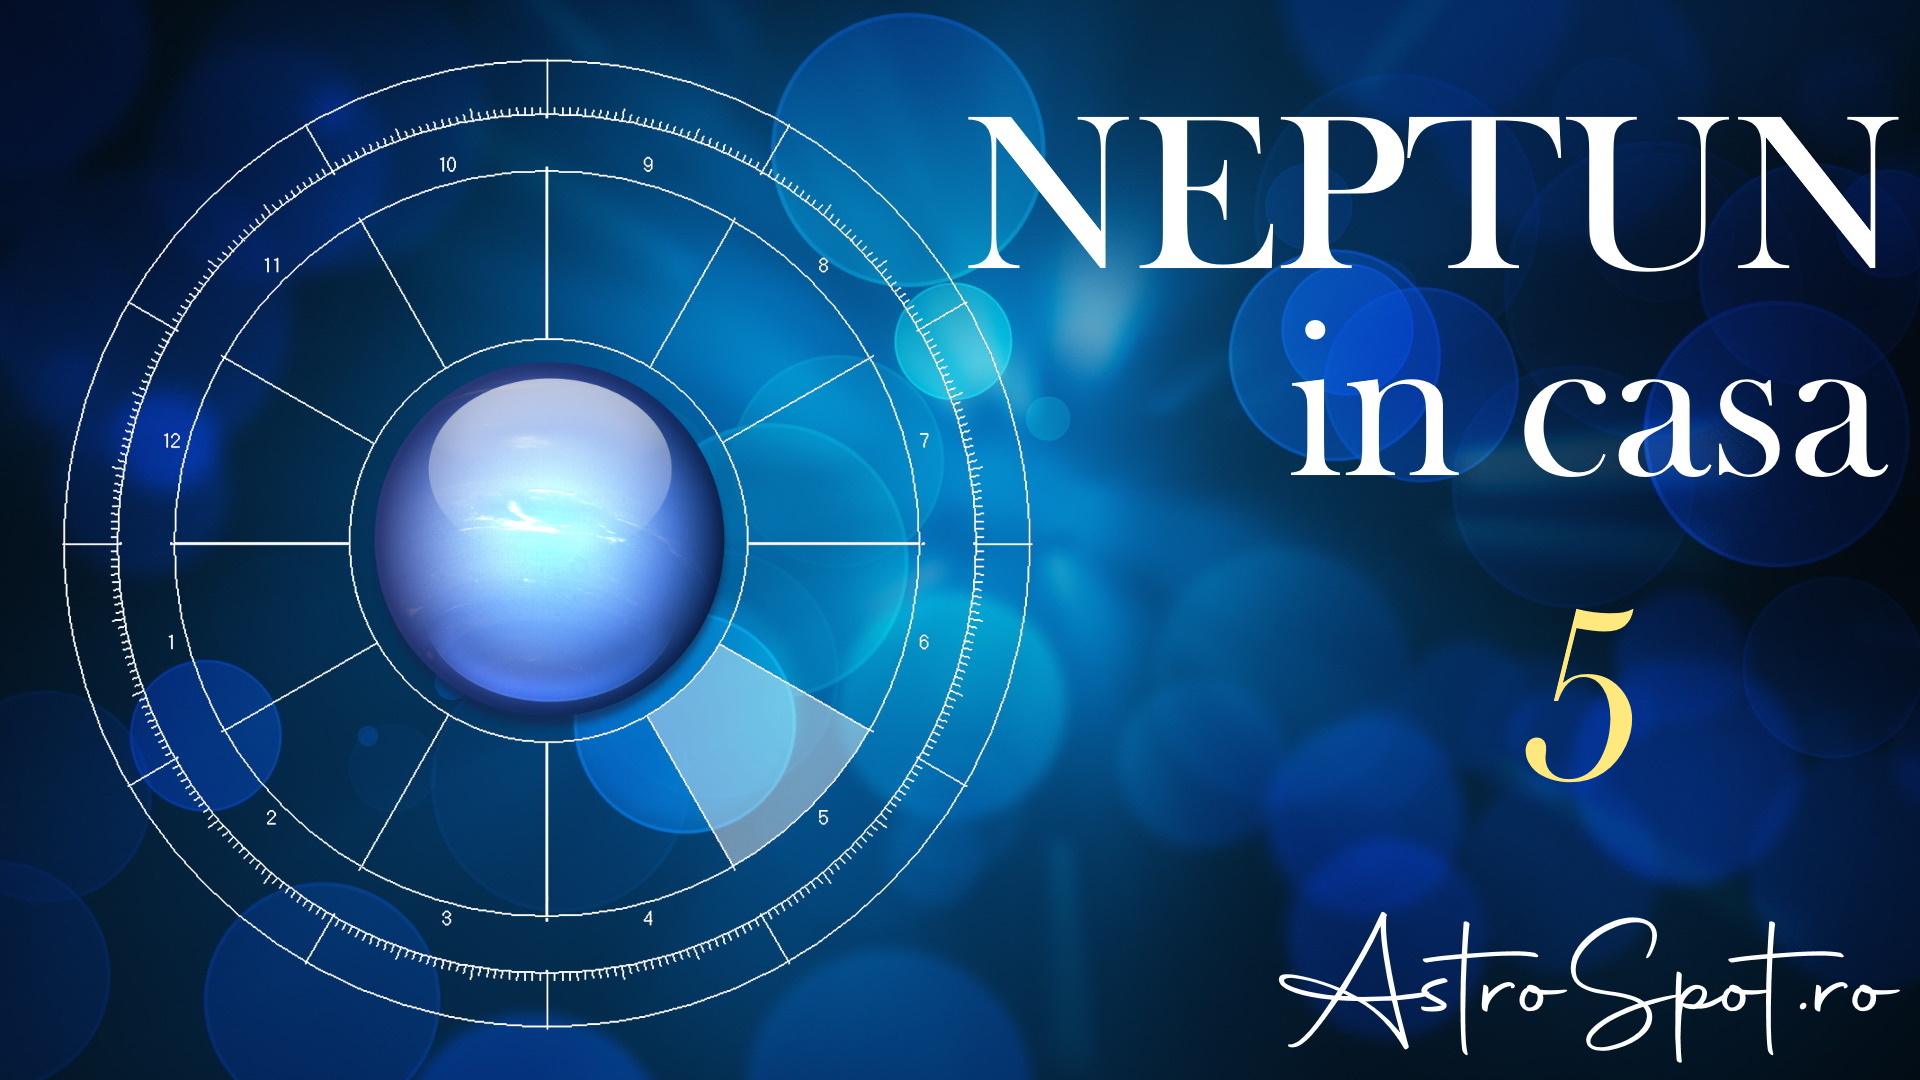 Neptun in casa 5